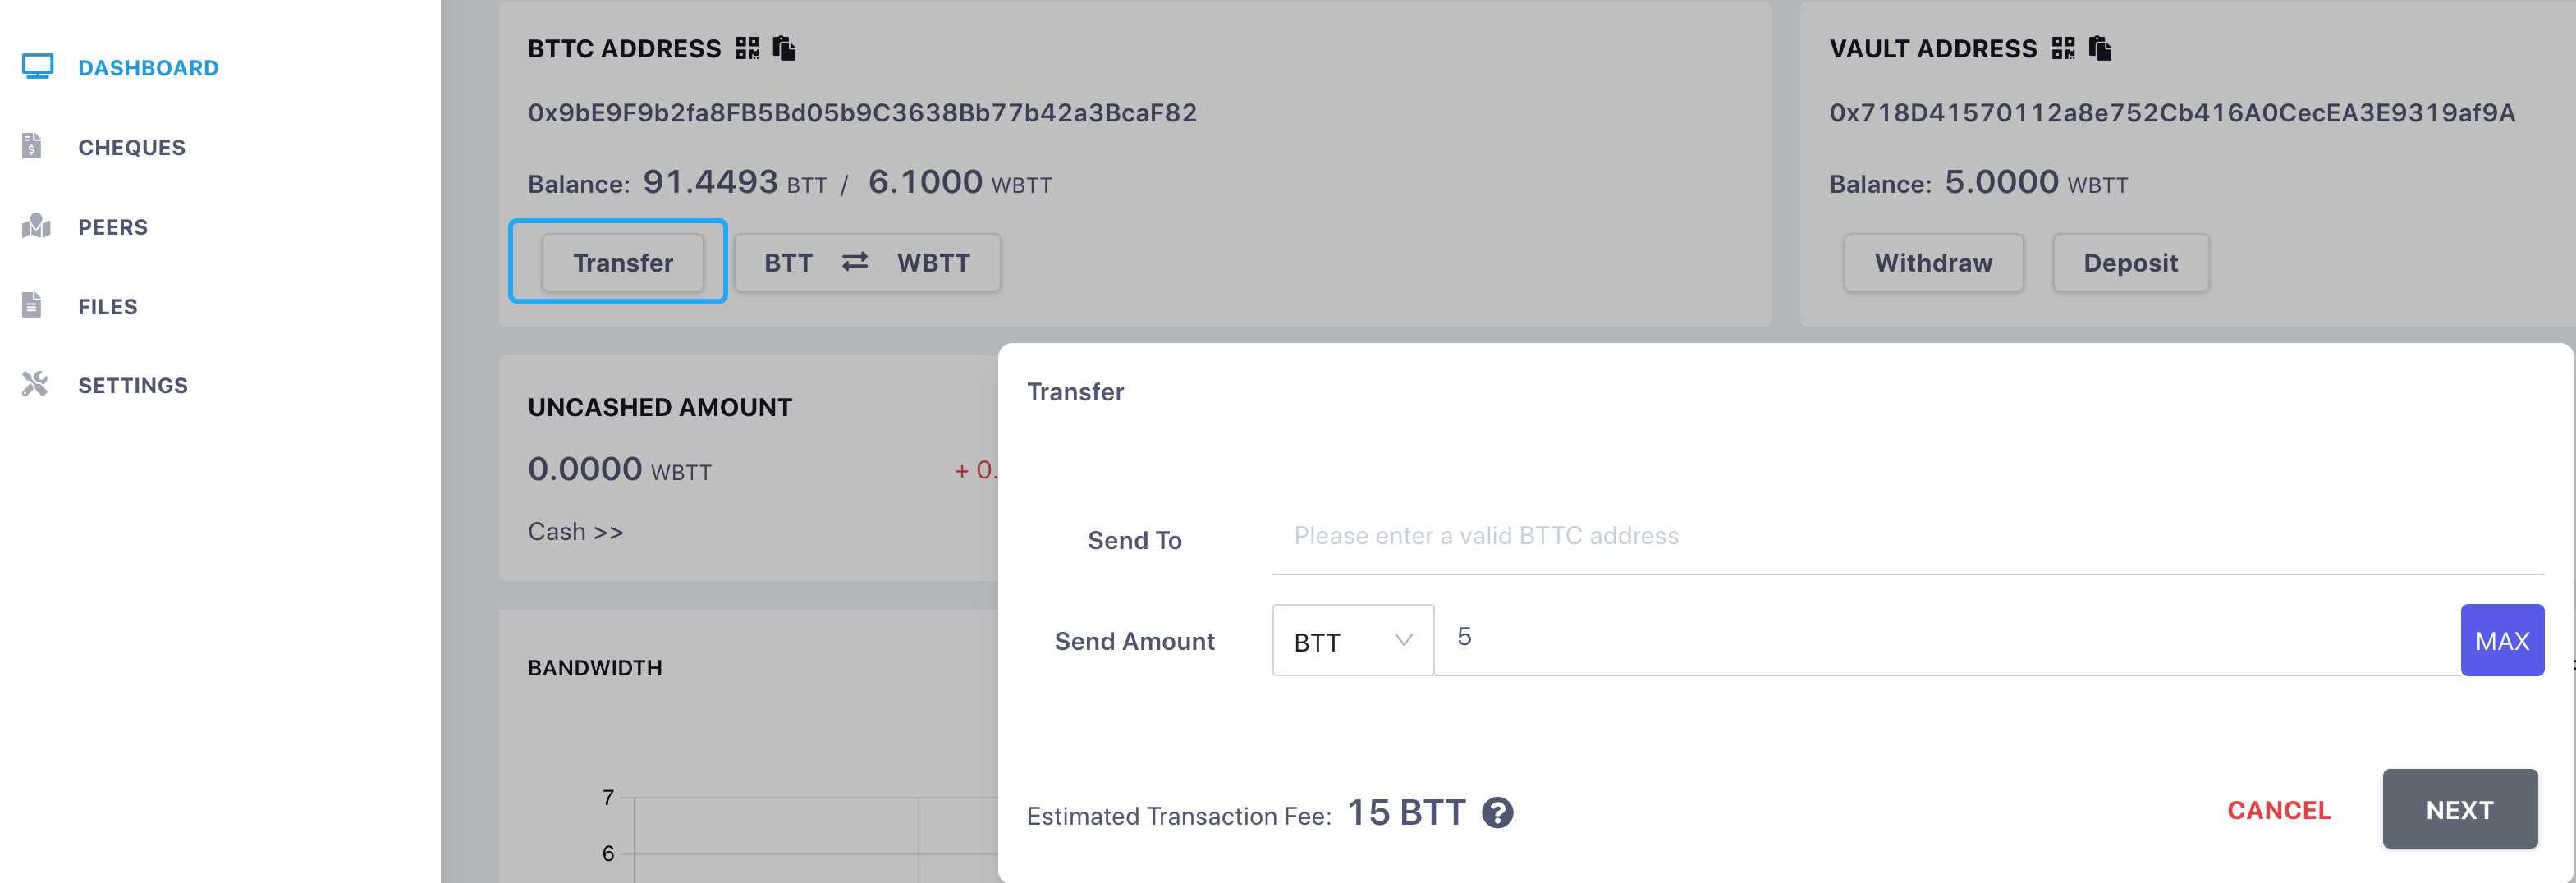 Transfer BTT to external BTTC address